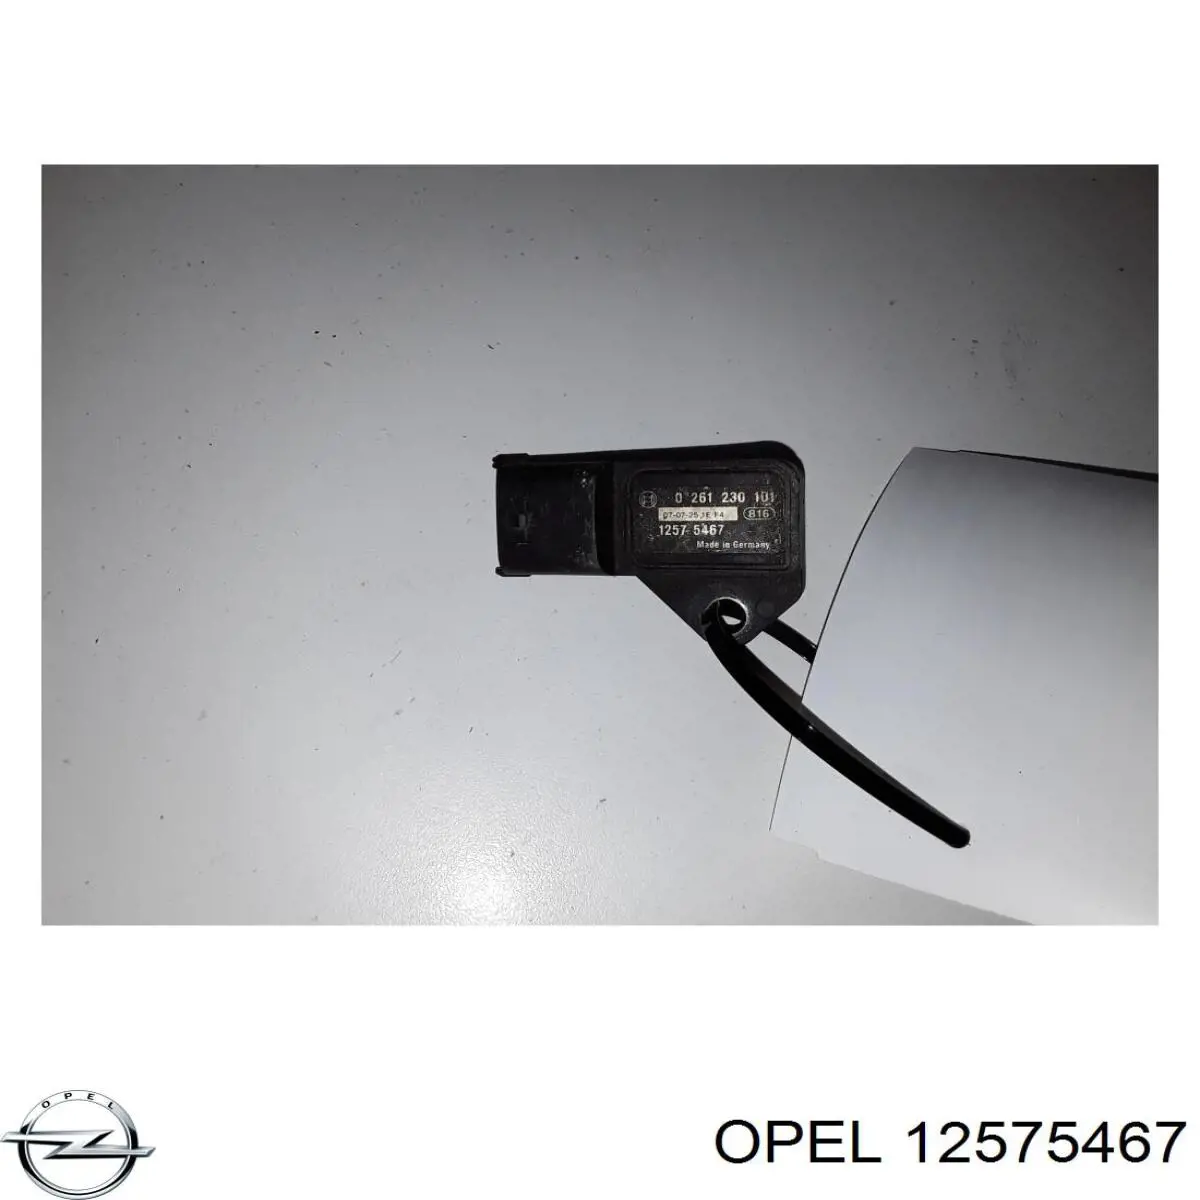 12575467 Opel датчик давления во впускном коллекторе, map